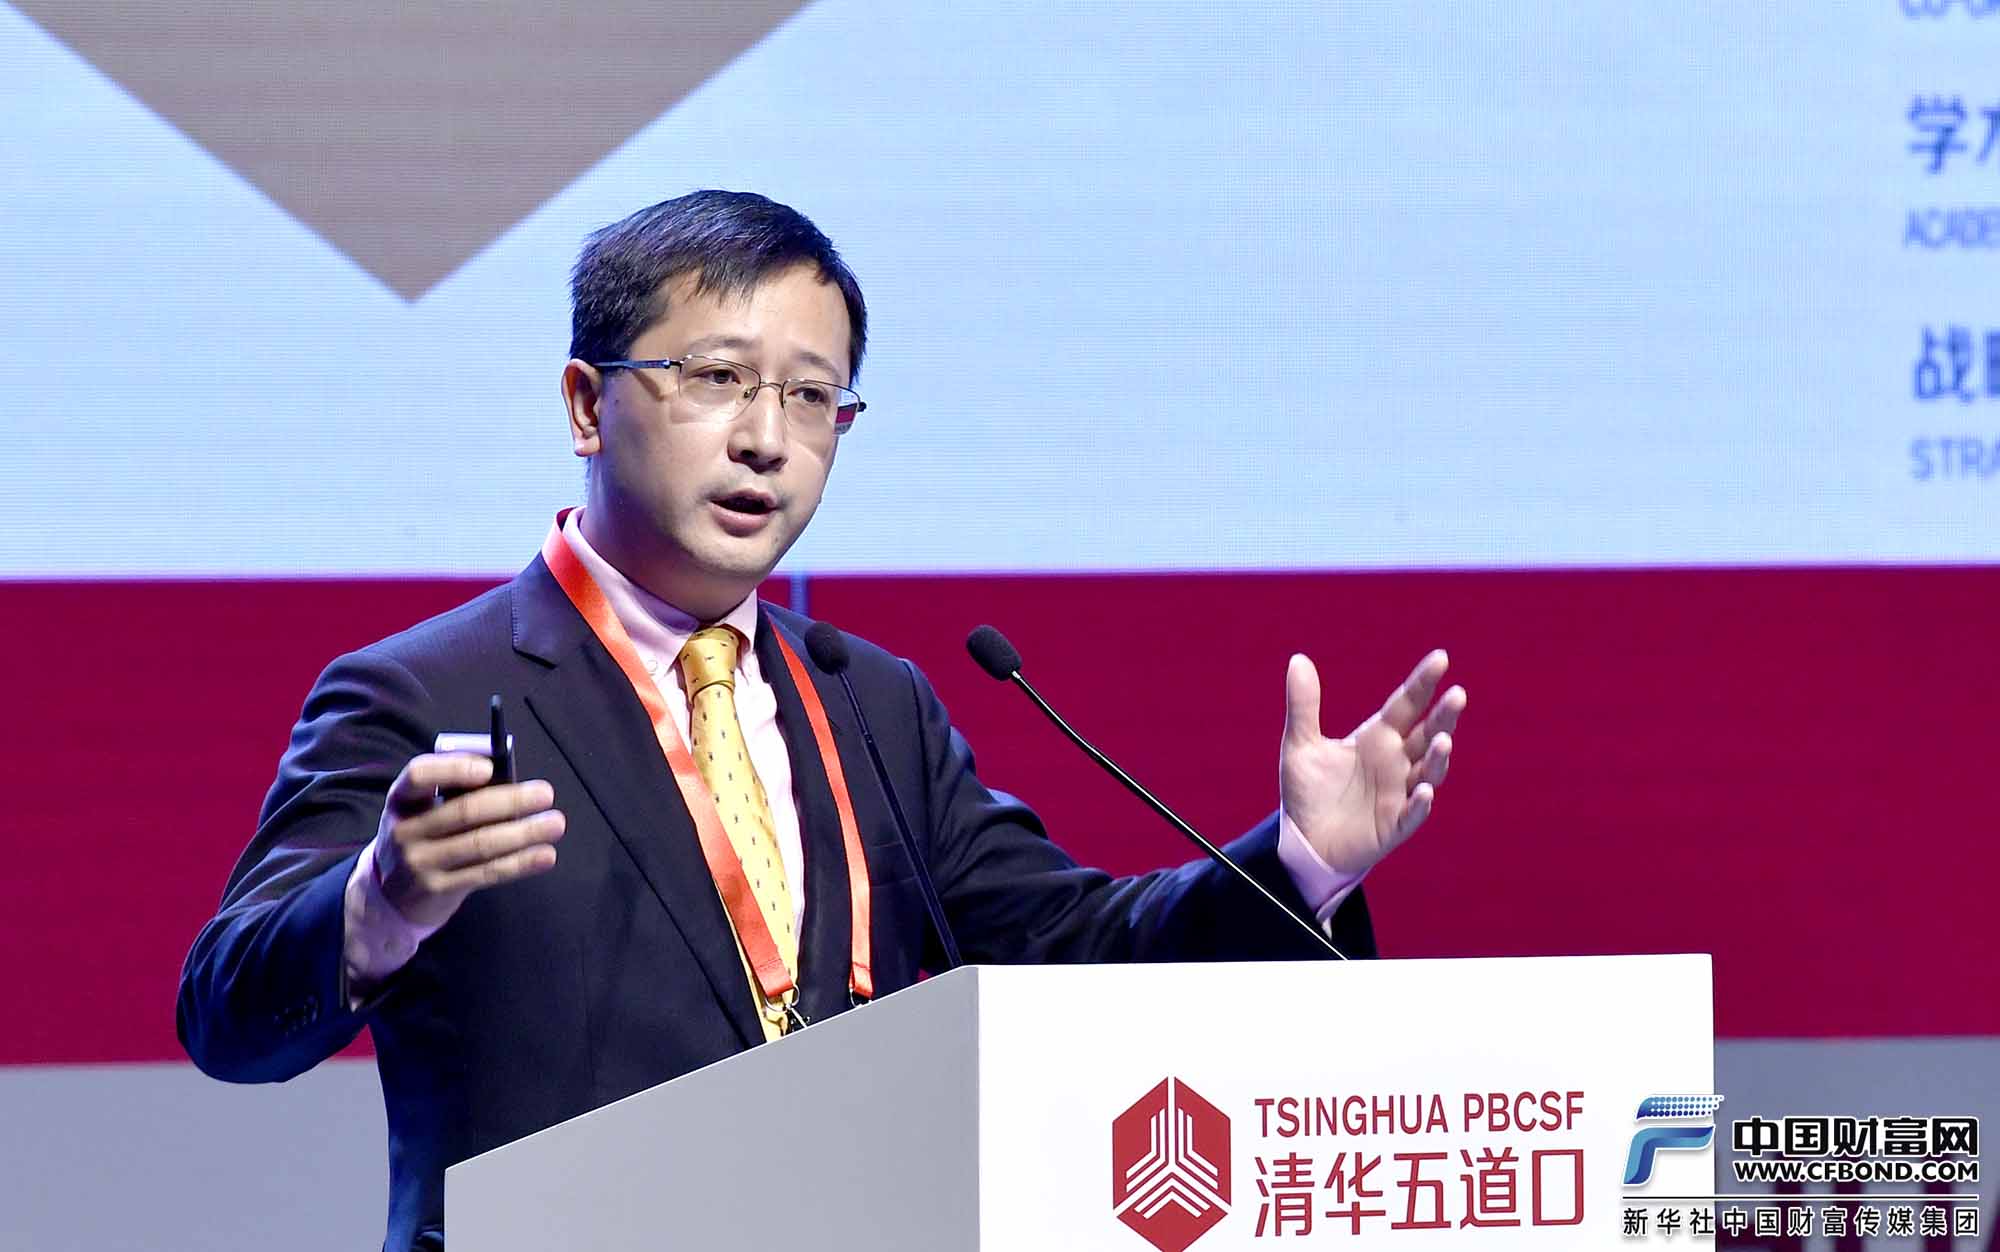 主题演讲：基构通创始人，上海基煜基金销售有限公司总裁王翔